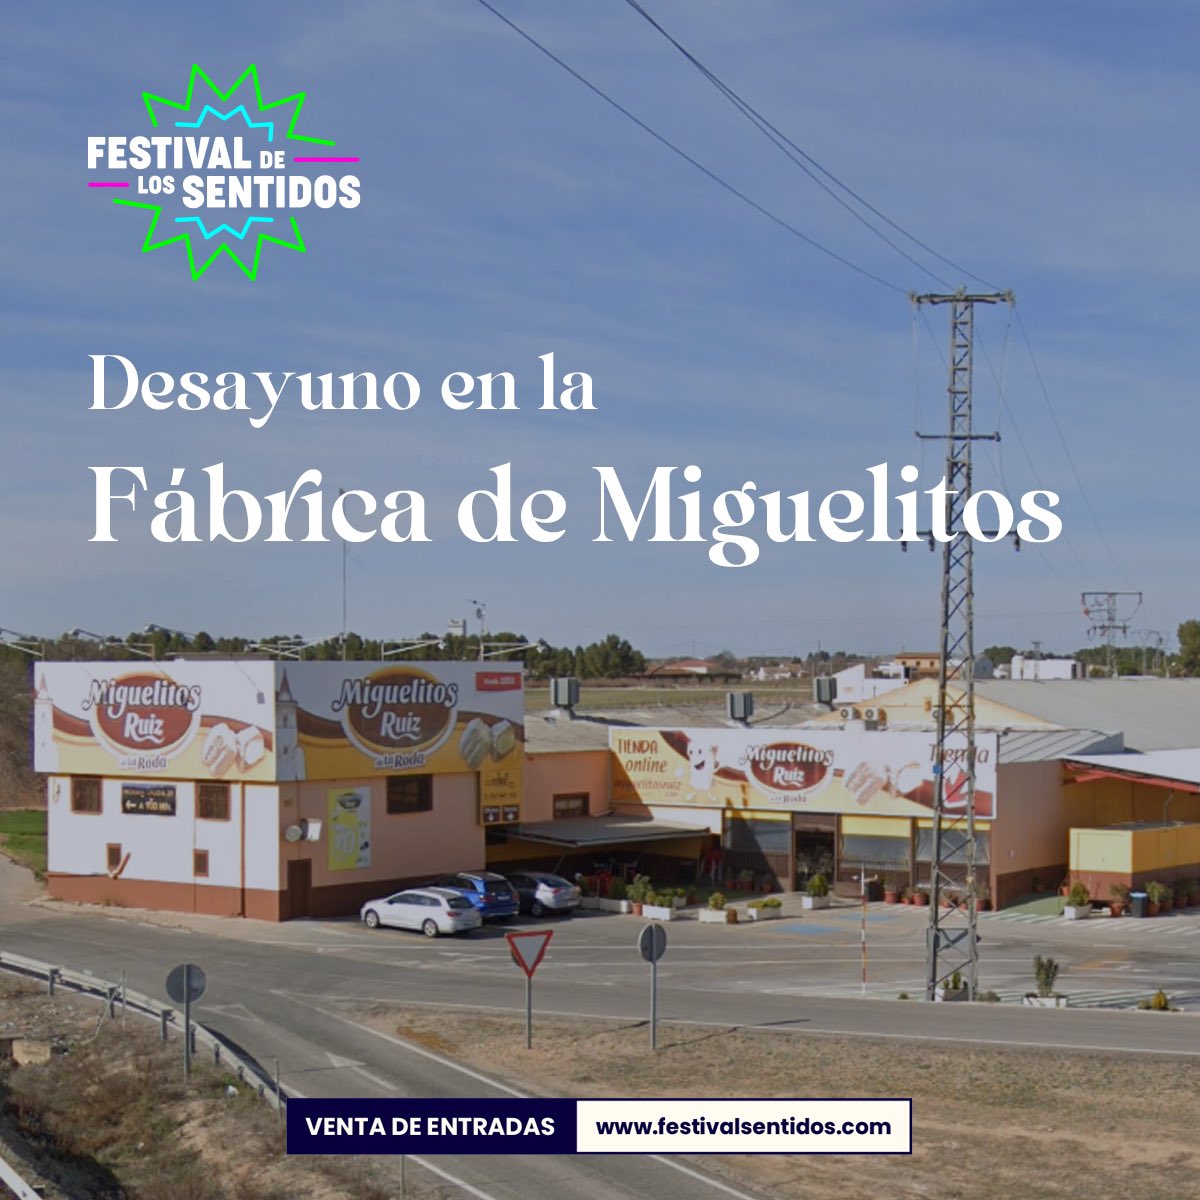 festivalsentidos.com/actividades/